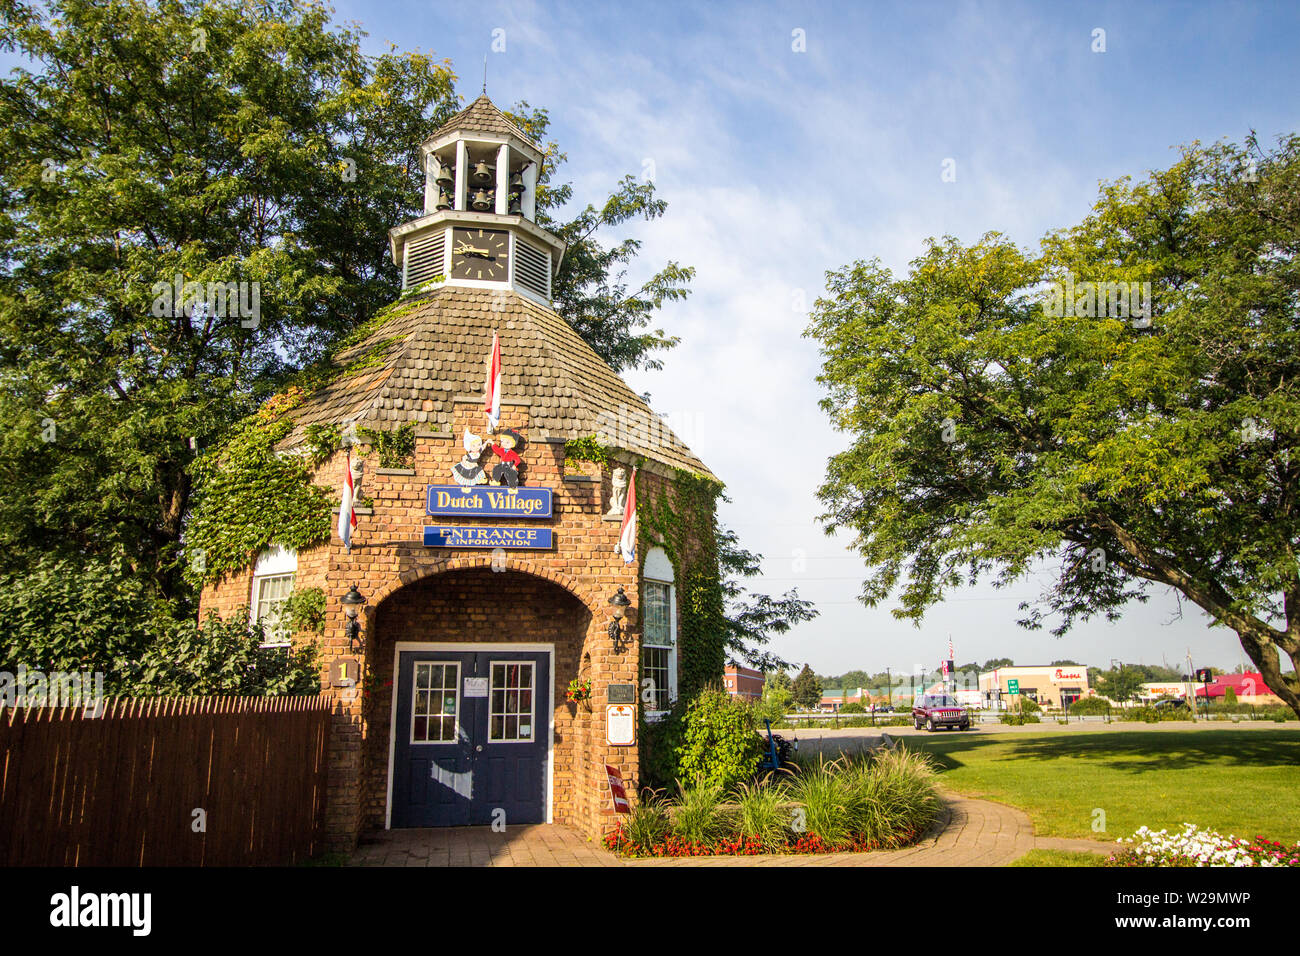 Holland, Michigan, États-Unis - 18 septembre 2018 : Street View de cottage de style hollandais et magasins à Nelis Dutch Village. Banque D'Images